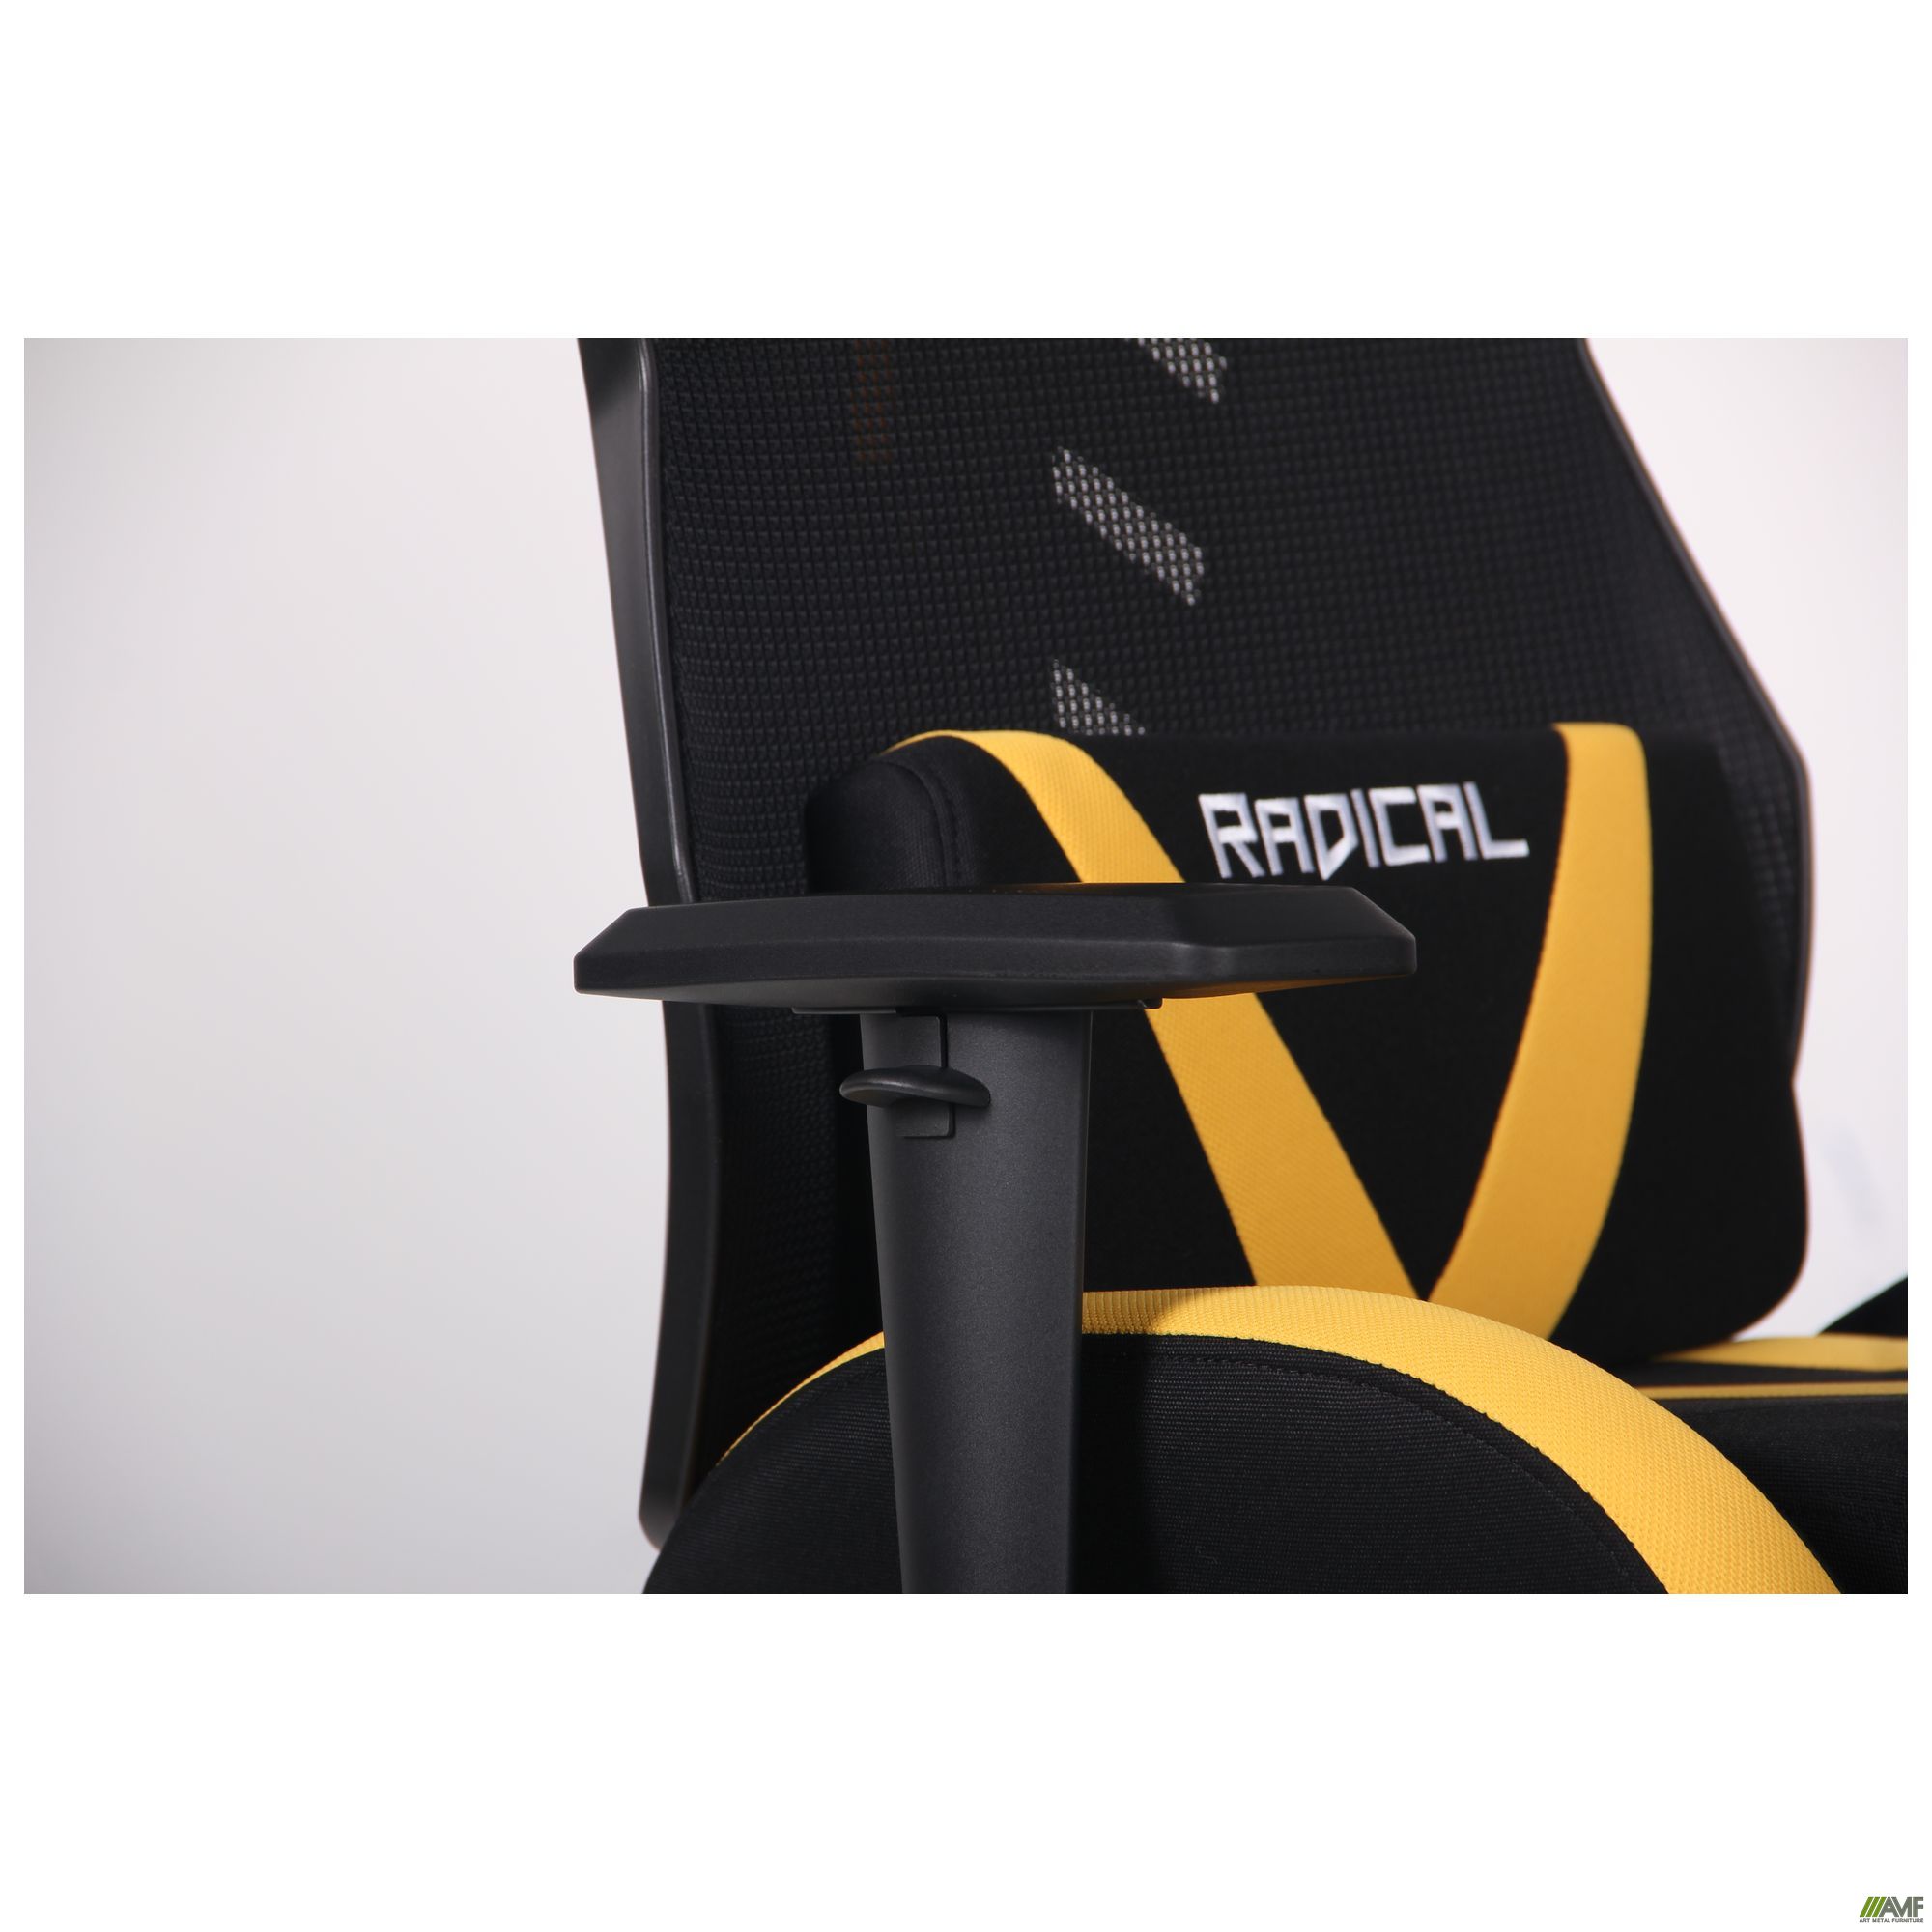 Фото 11 - Кресло VR Racer Radical Wrex черный/желтый 